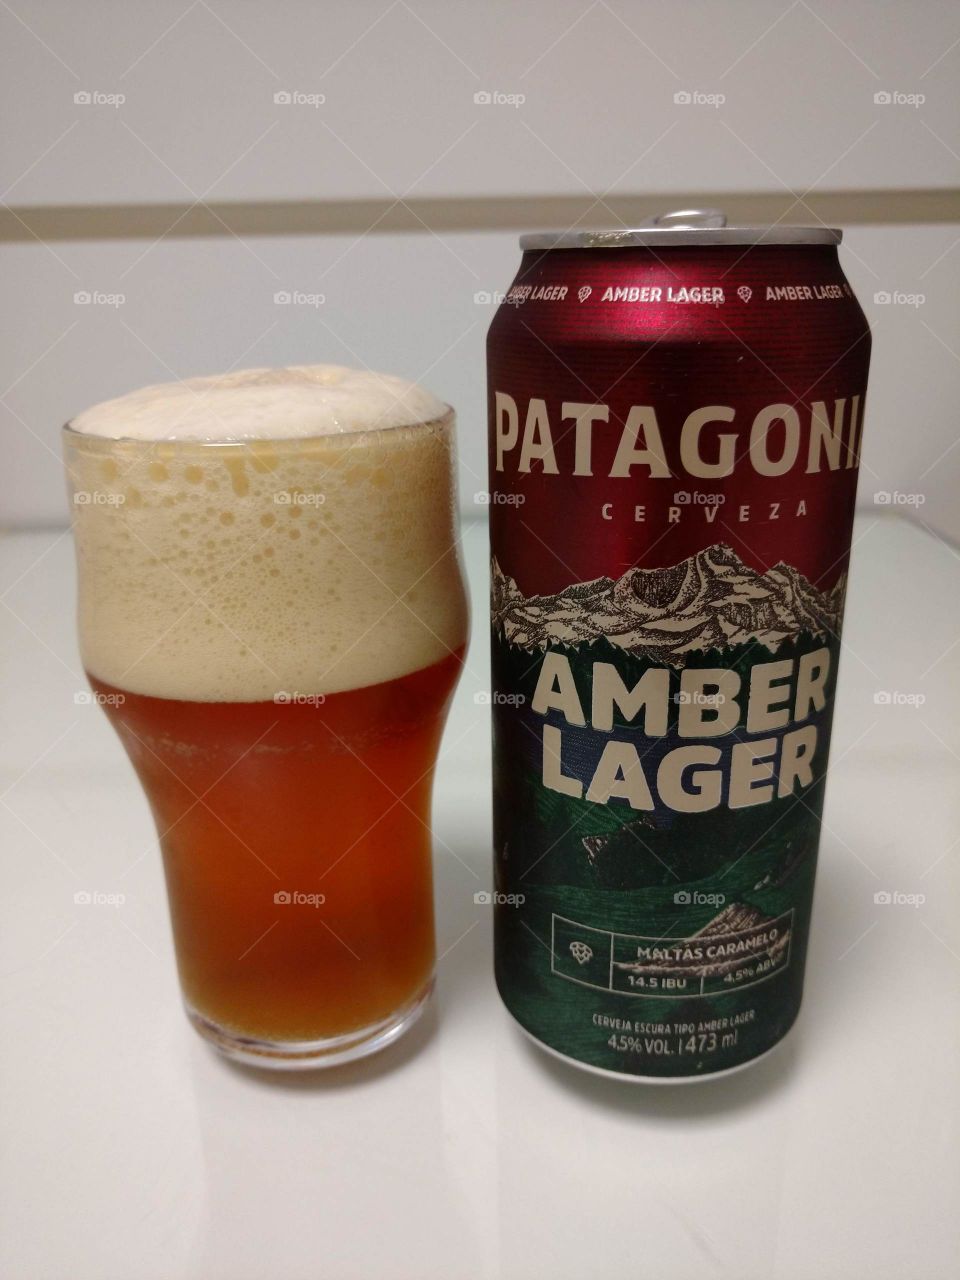 Patagonia Amber Lager